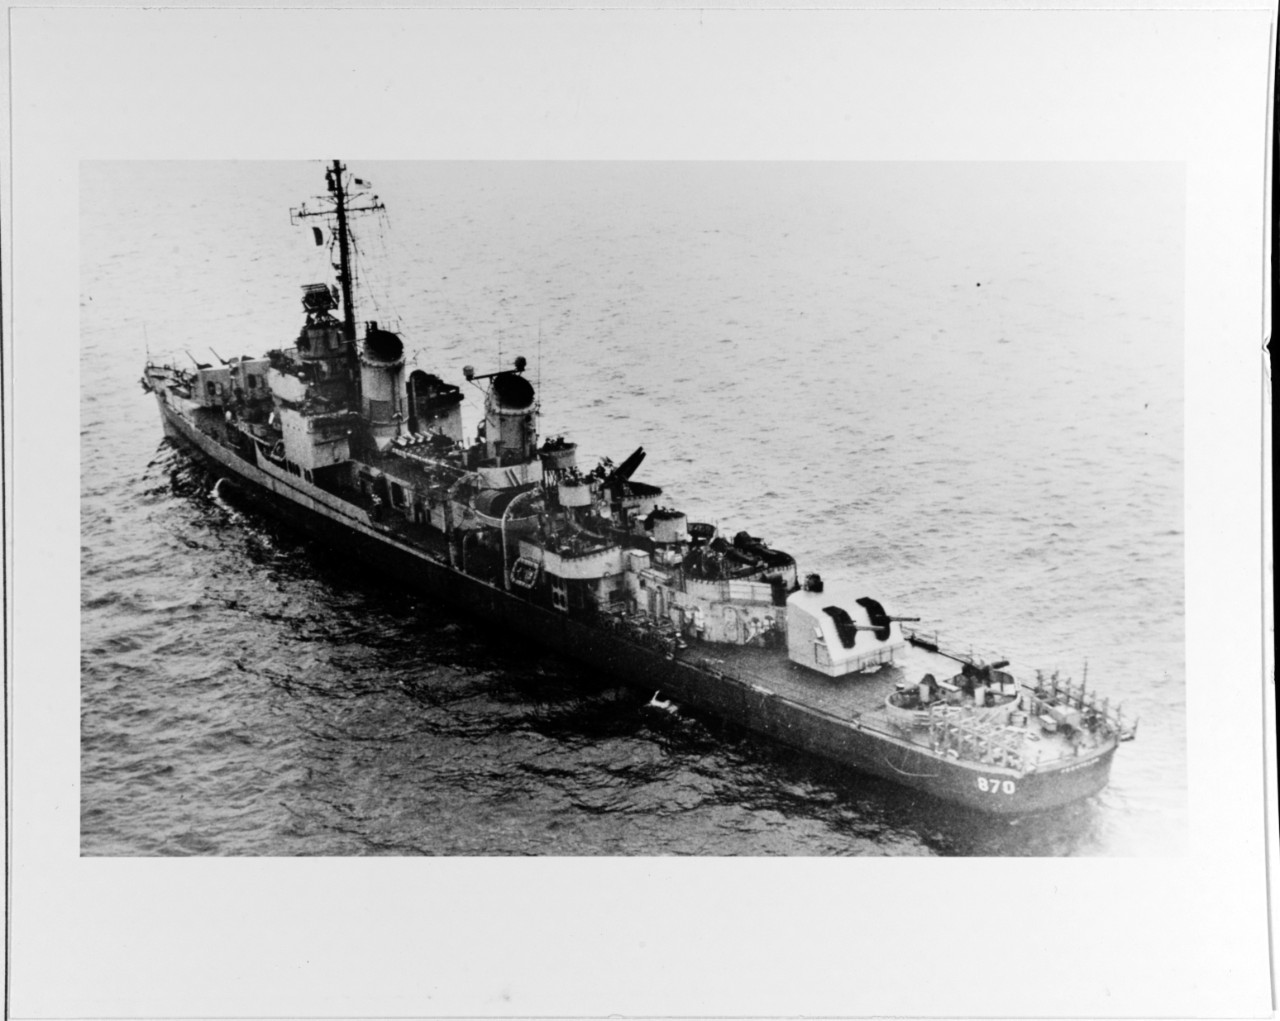 USS FECHTELER (DD-870)